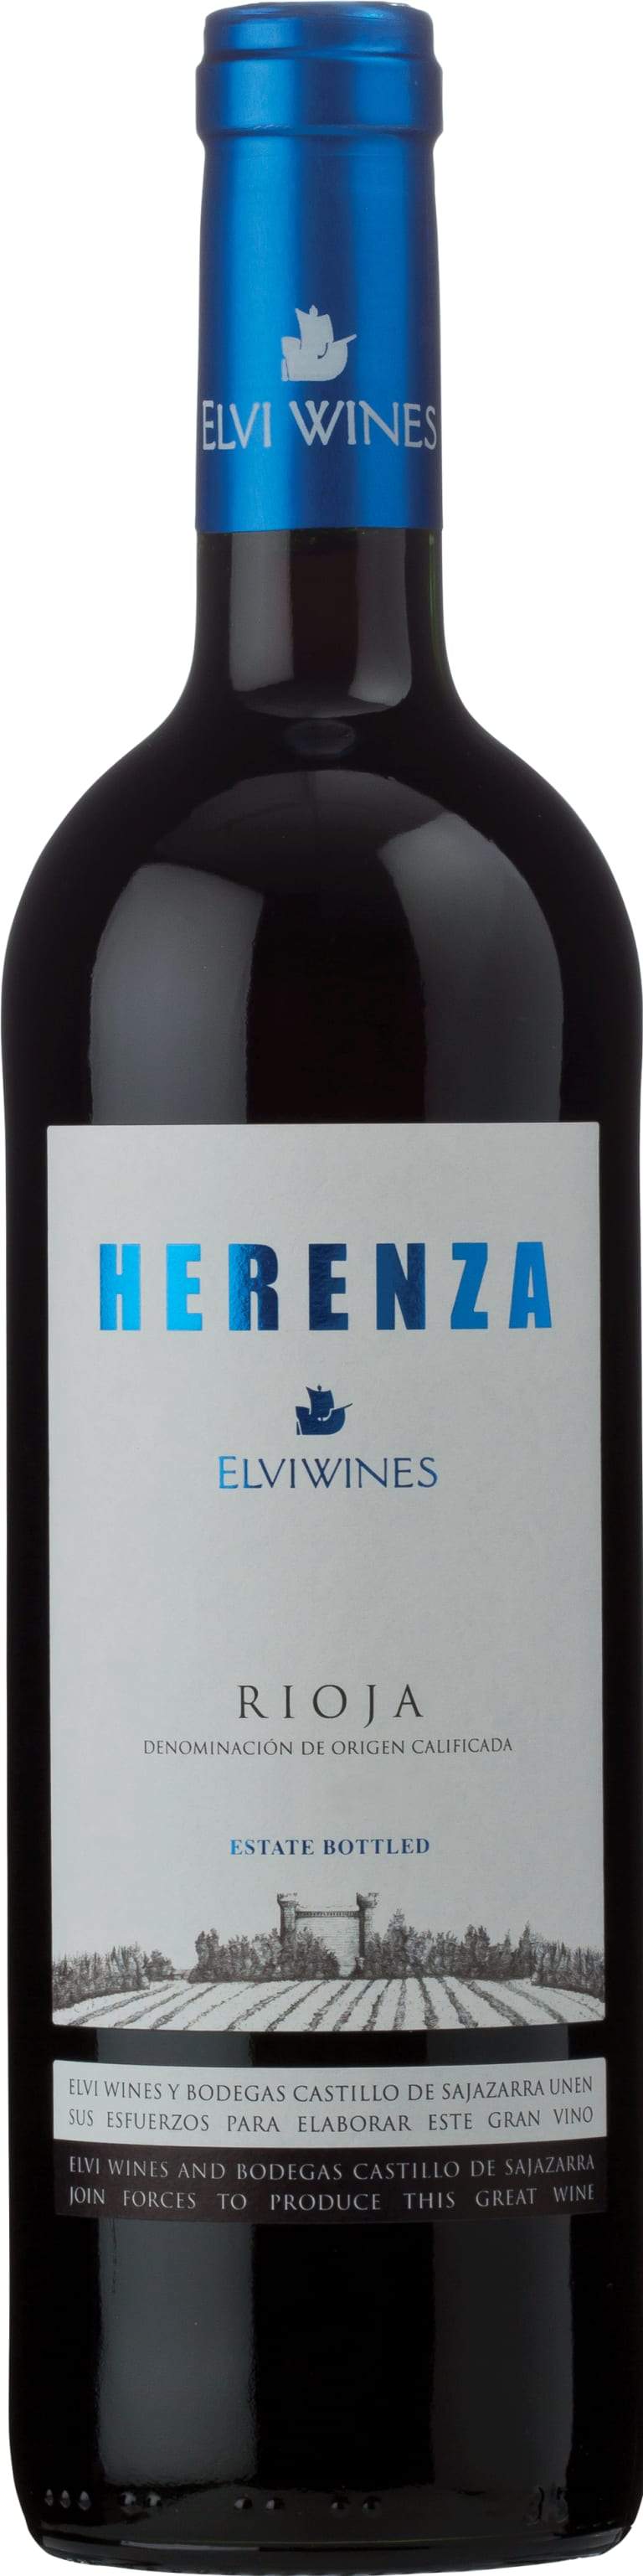 Elvi Wines Rioja Herenza 2018